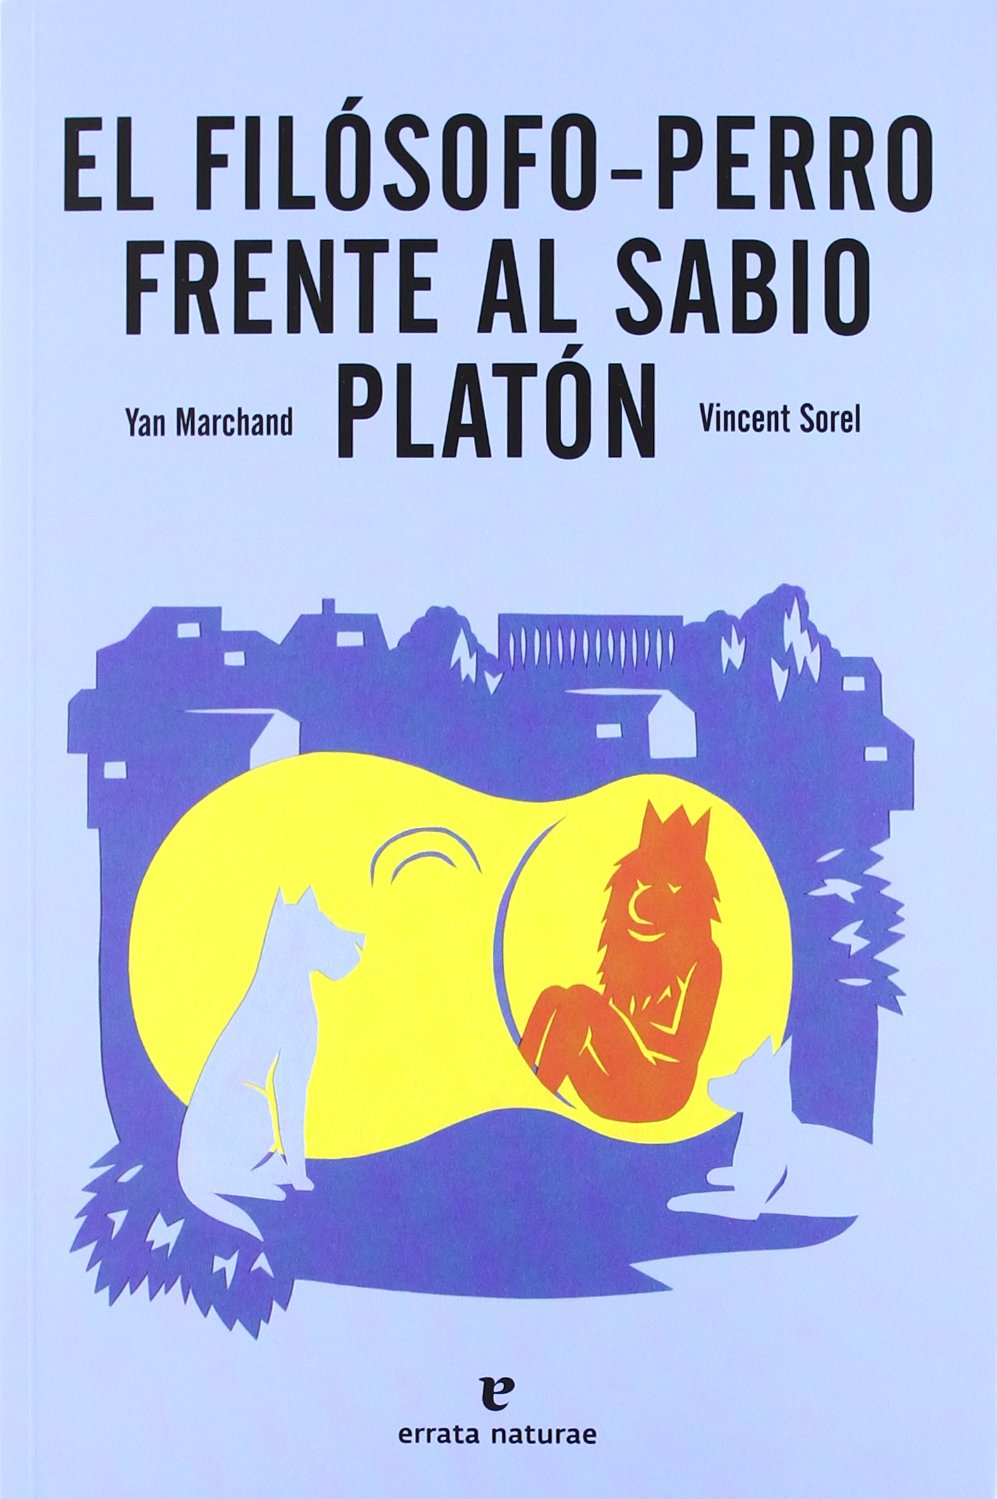 EL FILÓSOFO PERRO FRENTE AL SABIO PLATÓN - Yan Marchand